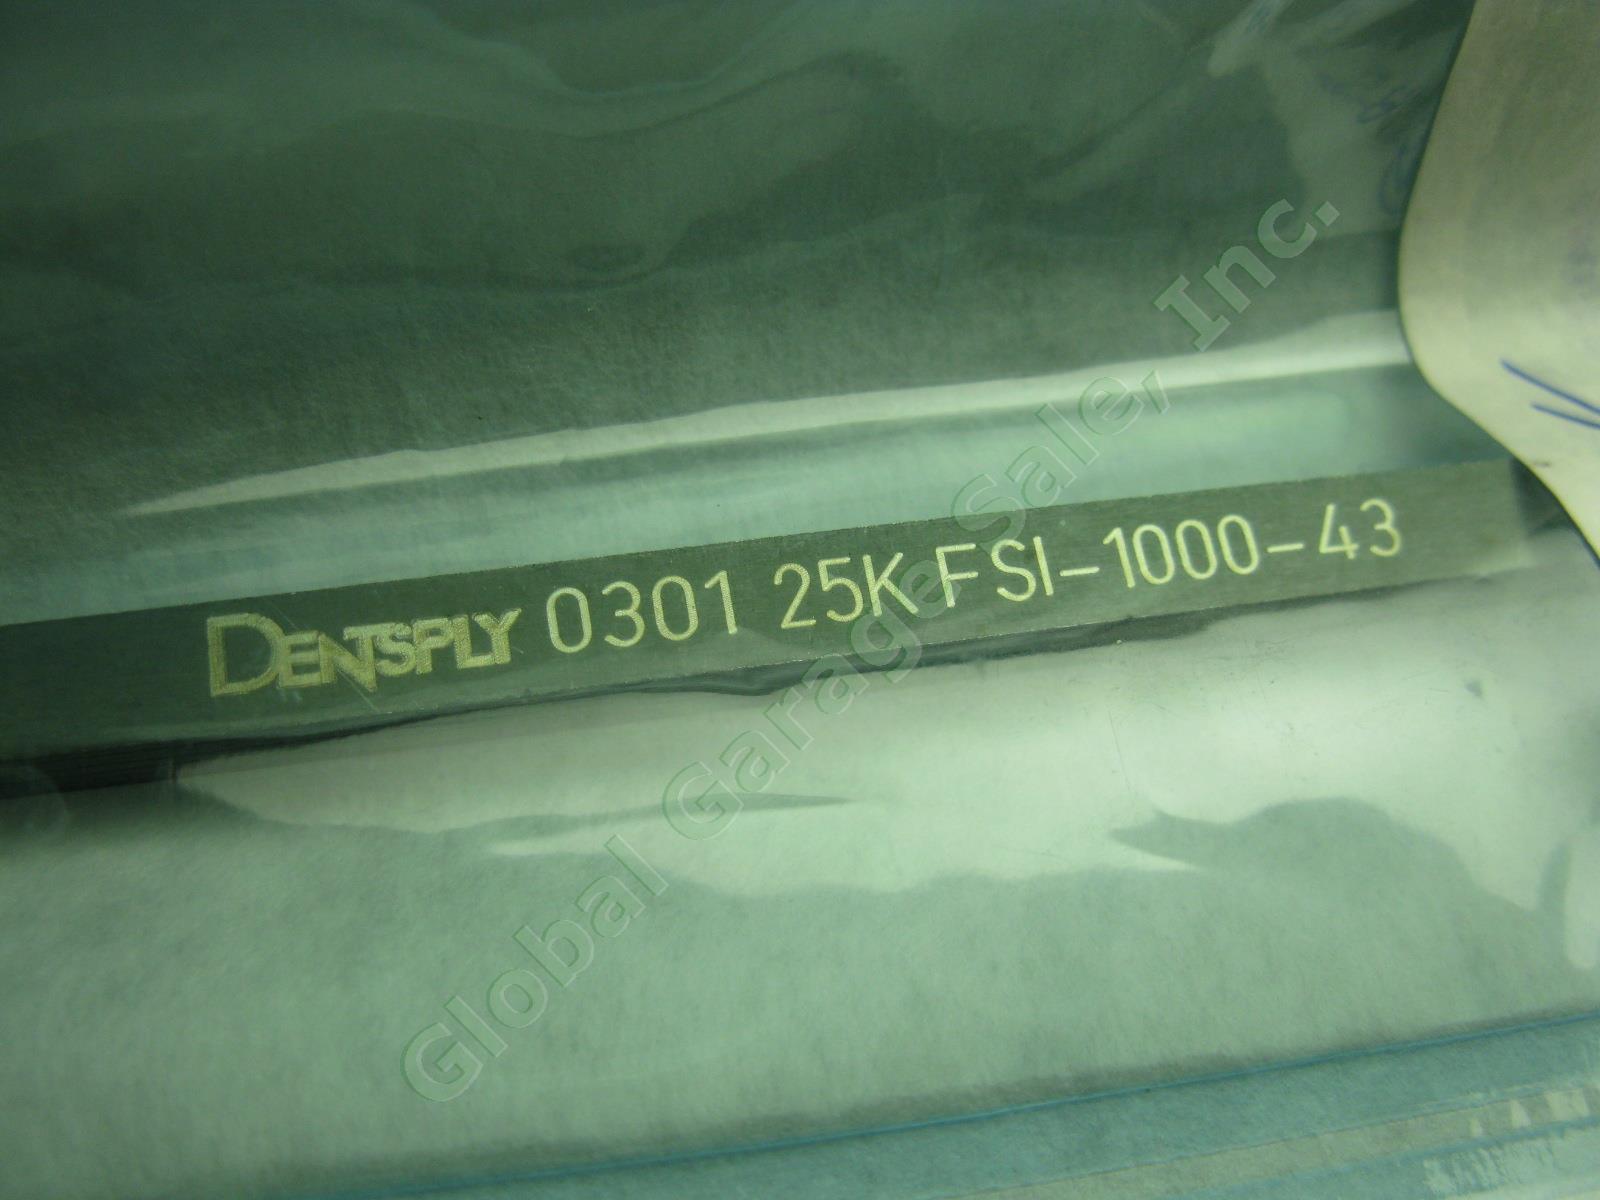 5 Dentsply Cavitron Ultrasonic Dental Scaler Insert Tip Lot 25K Safco Unipack NR 2